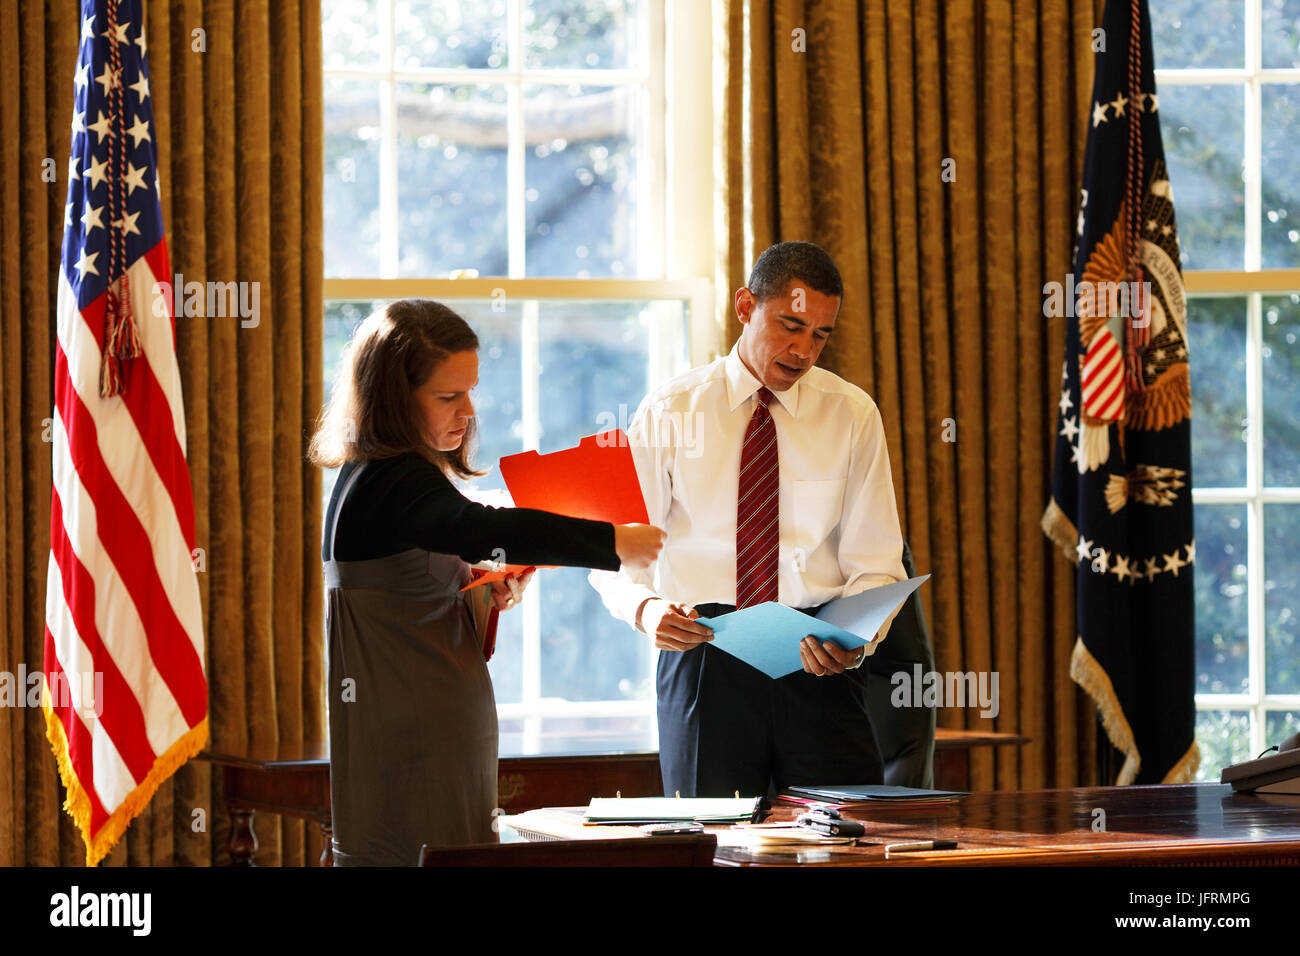 Le président Barack Obama se penche sur la correspondance quotidienne dans le bureau ovale avec son secrétaire personnel Katie Johnson 1/30/09. Photo Officiel de la Maison Blanche par Pete Souza Banque D'Images